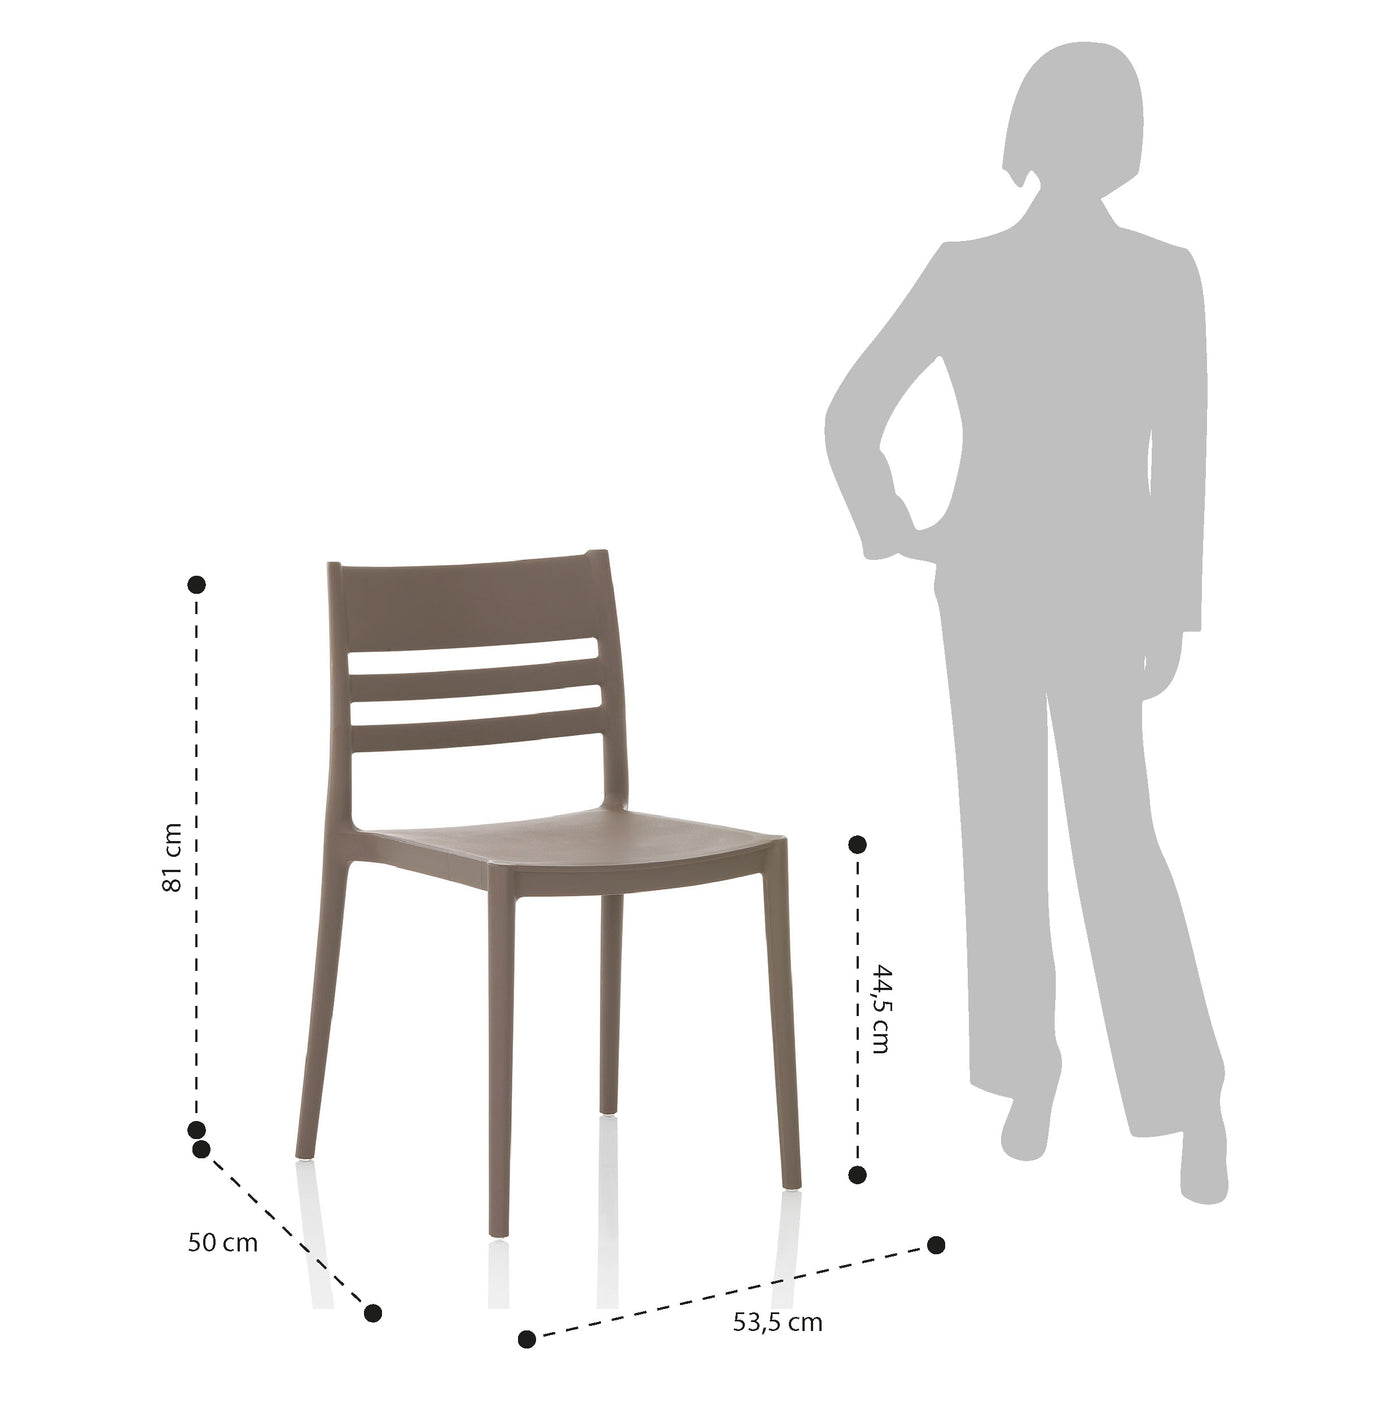 Set of 4 indoor/outdoor chairs CLYDE grey